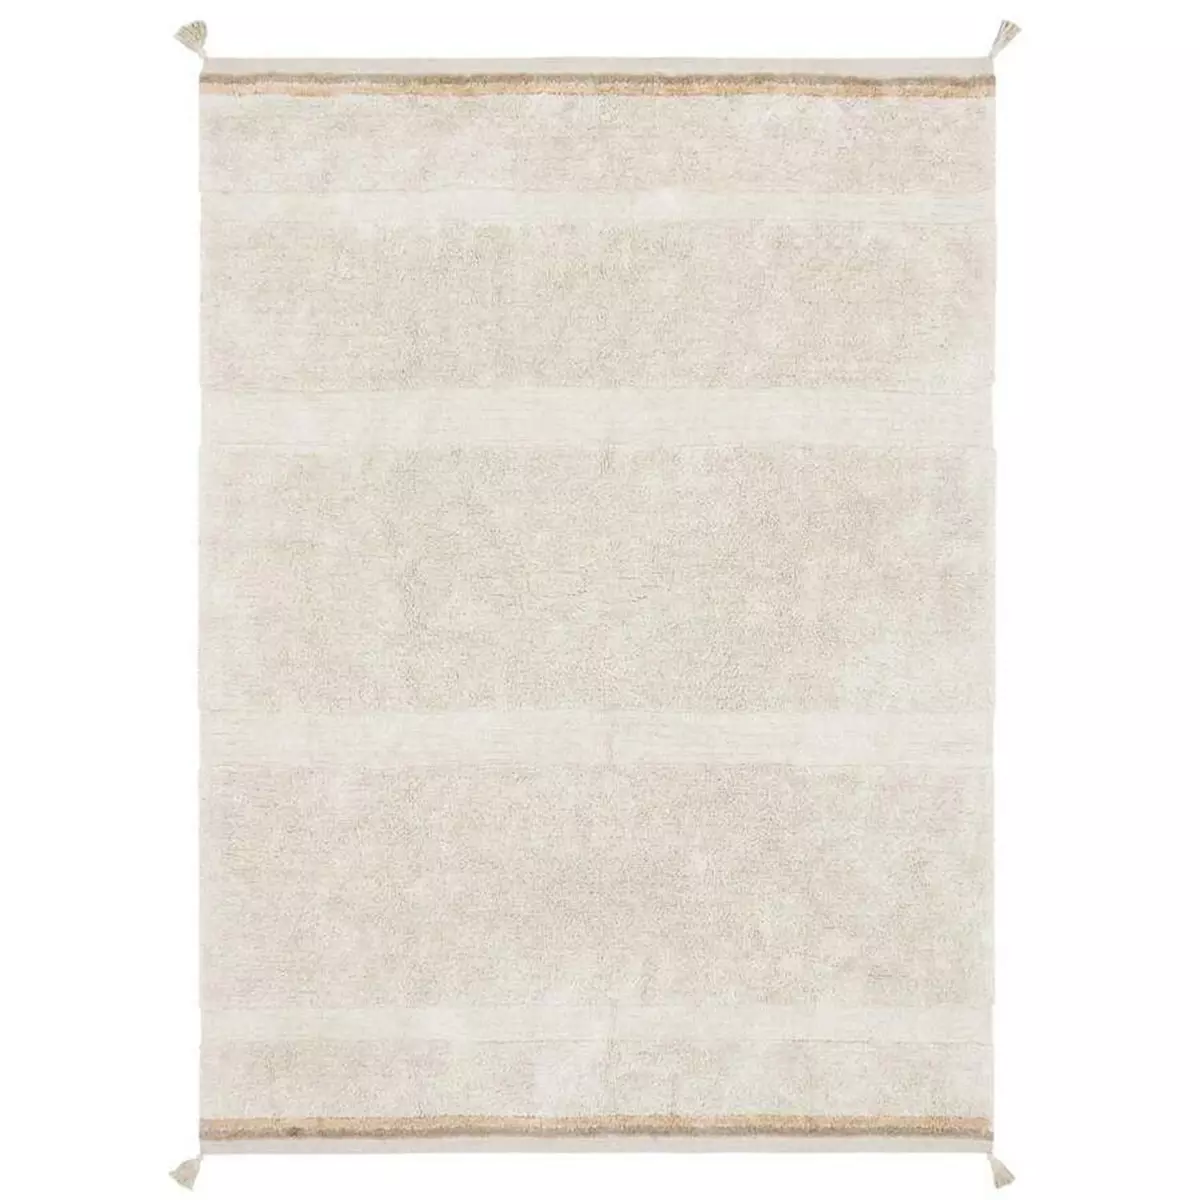 Lorena Canals Tapis coton beige texturé avec finition pompons XL - 200 x 300 cm